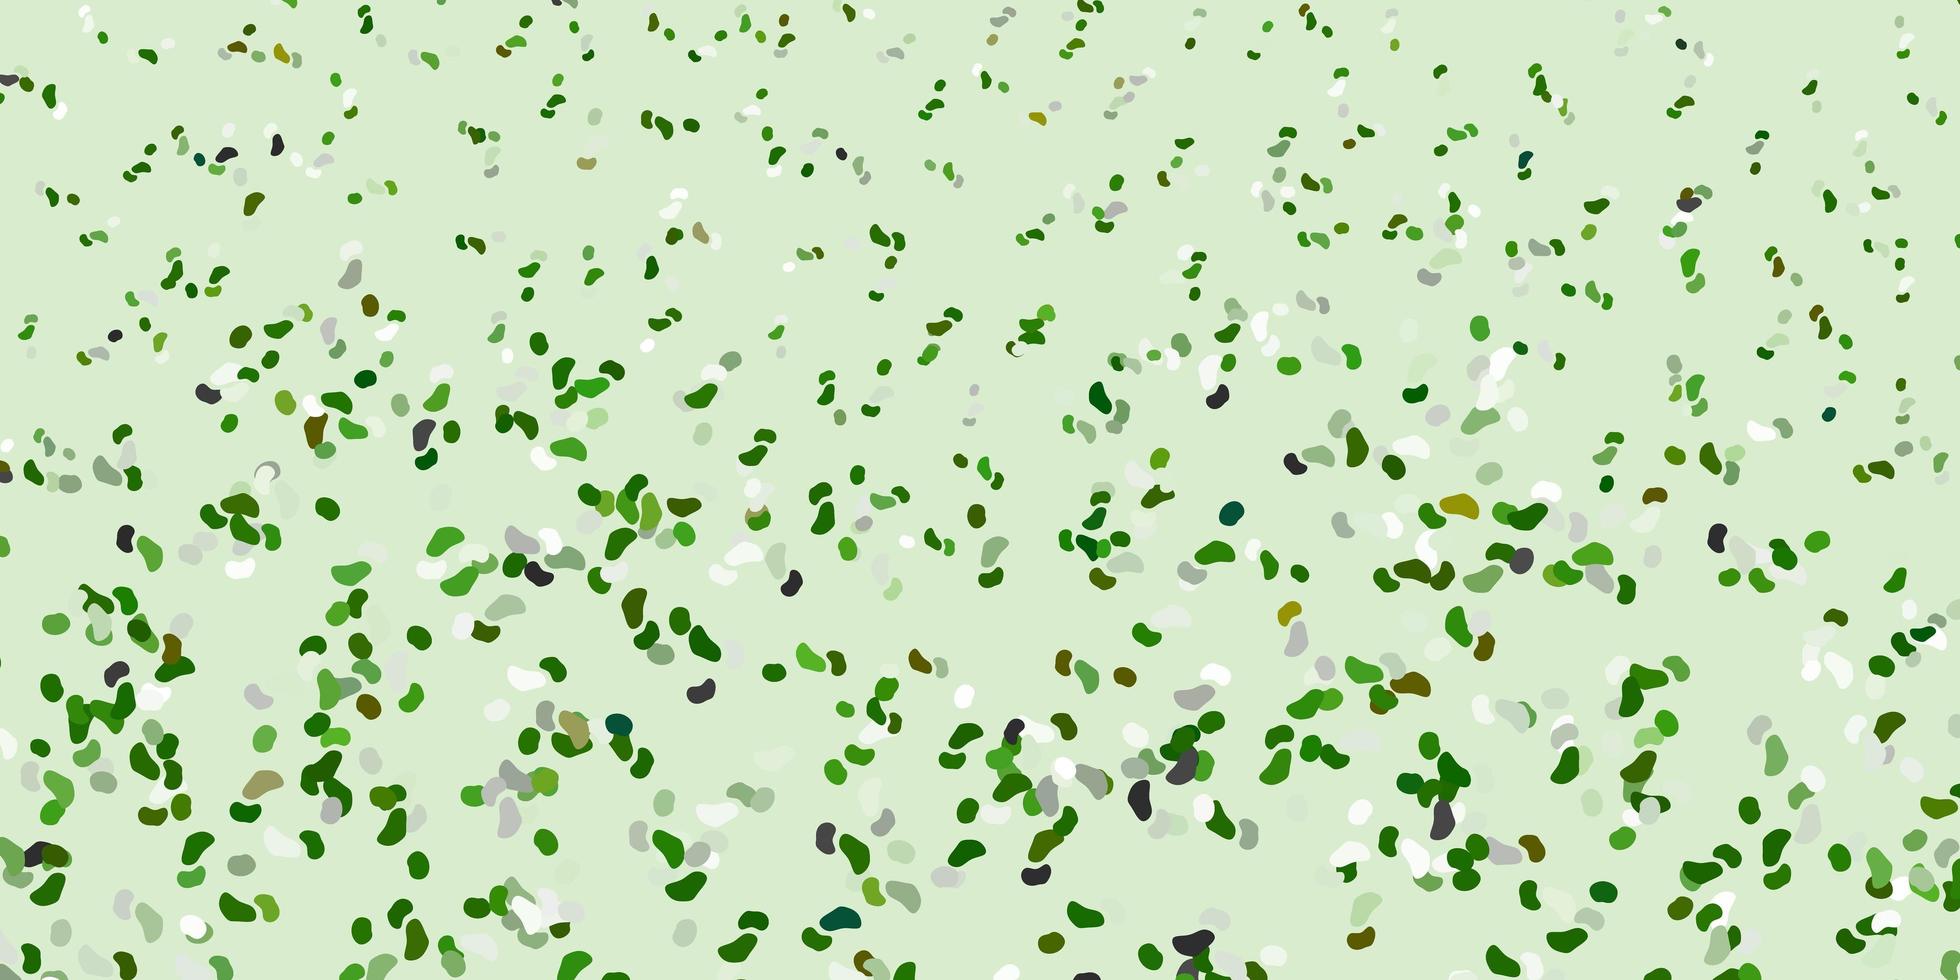 fond de vecteur vert clair avec des formes aléatoires.